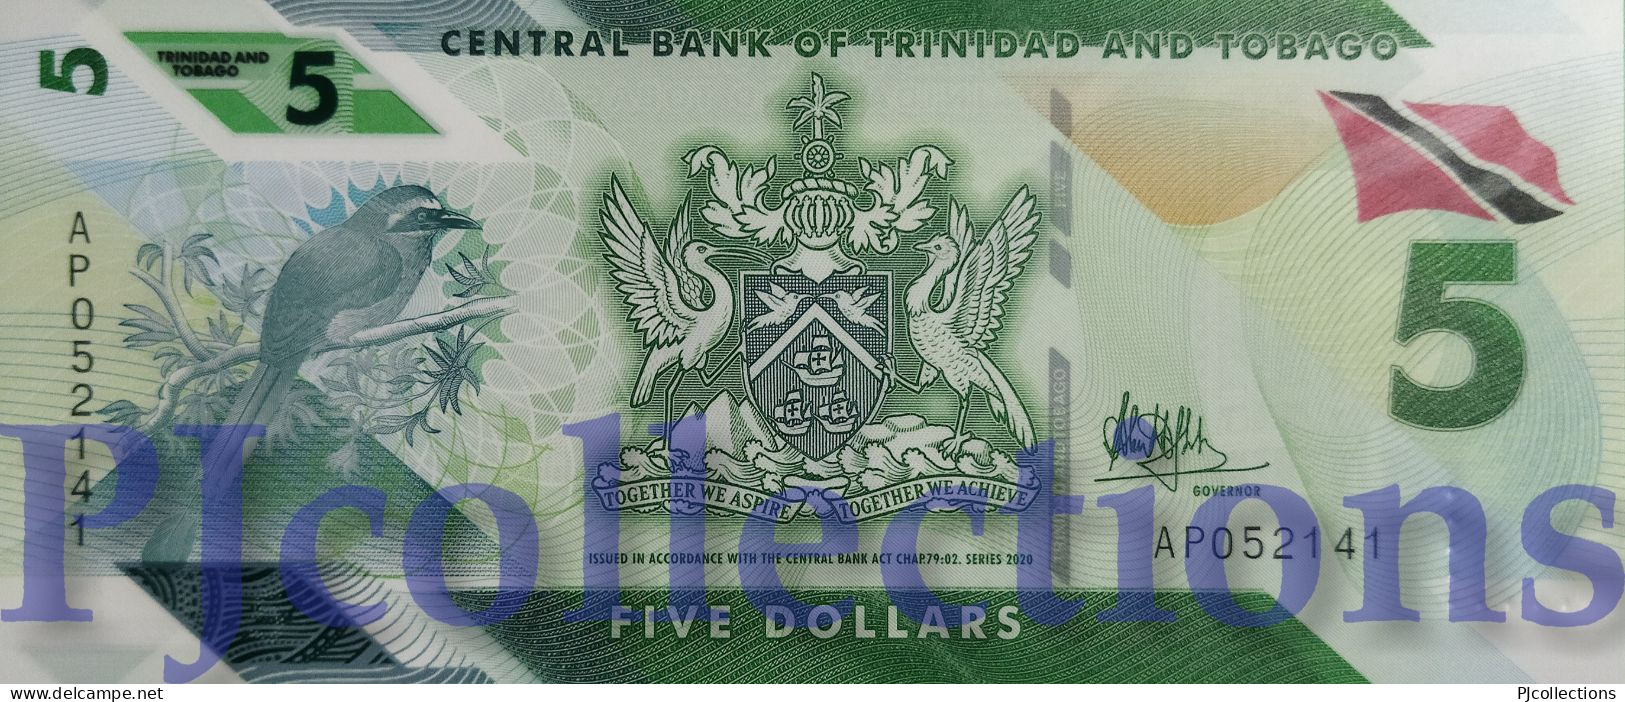 TRINIDAD & TOBAGO 5 DOLLARS 2020 PICK 61 POLYMER UNC - Trinidad & Tobago